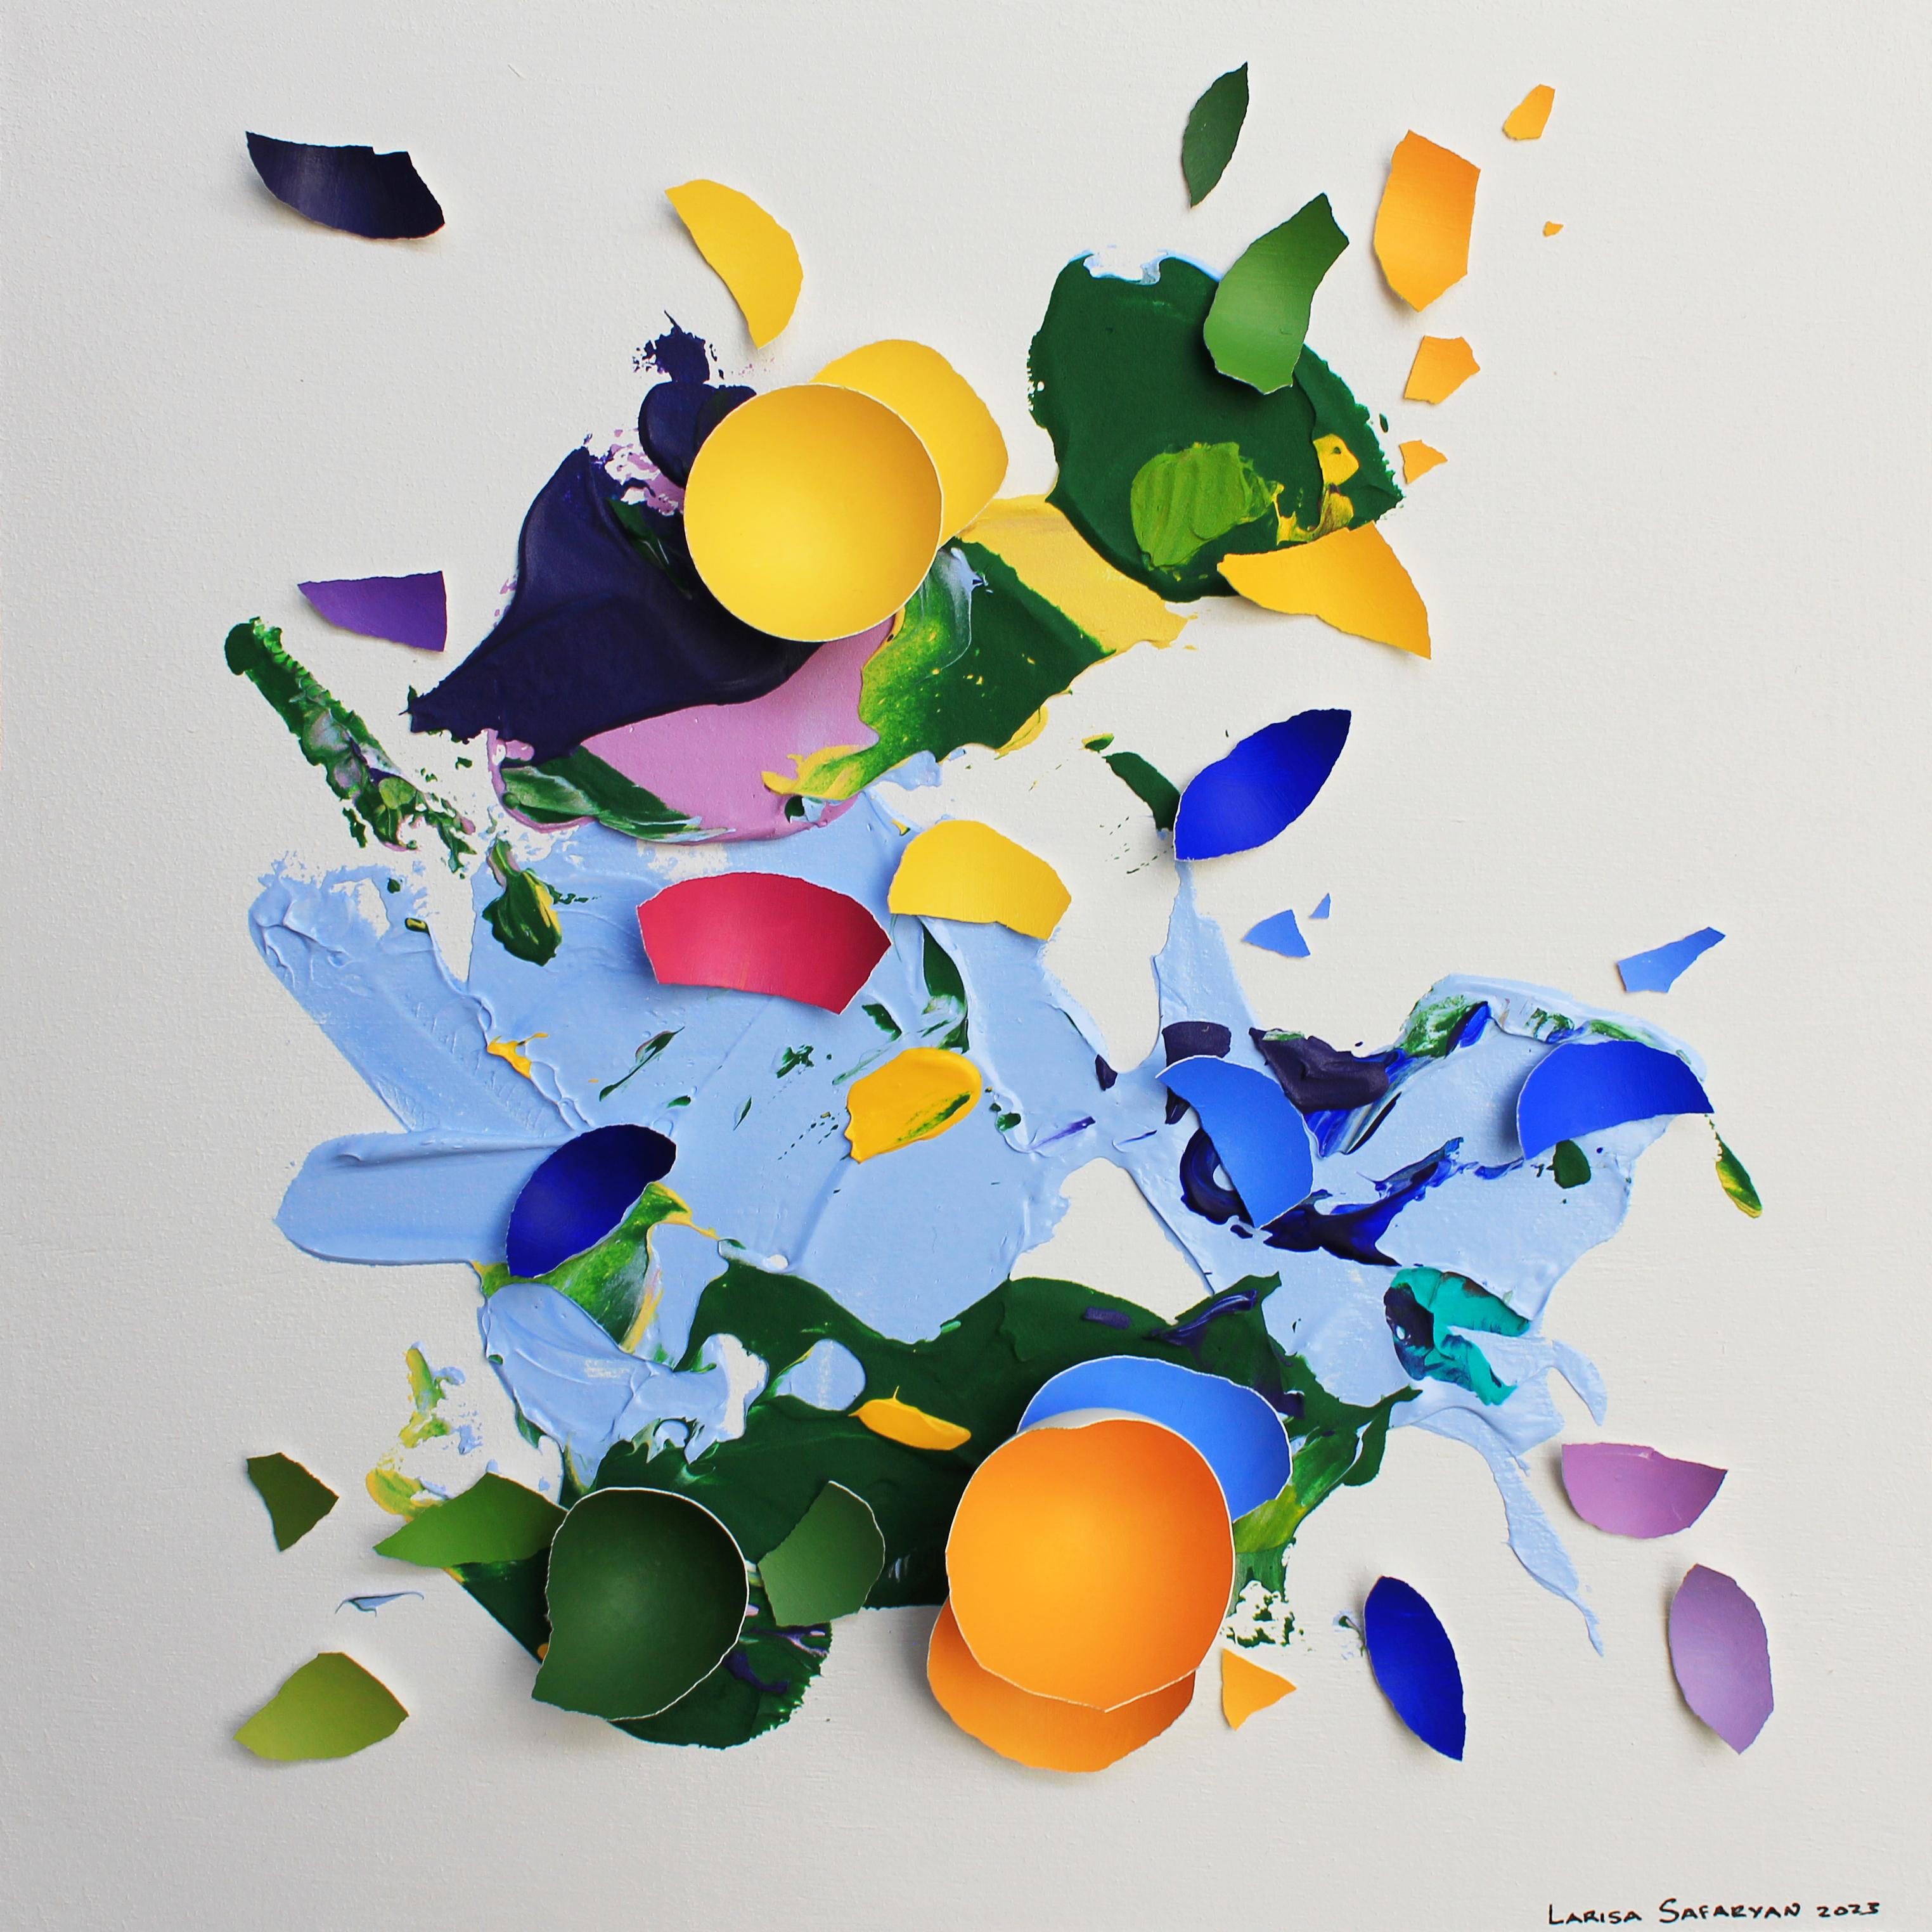 Larisa Safaryan Abstract Painting – Ausbruch der Farben VII